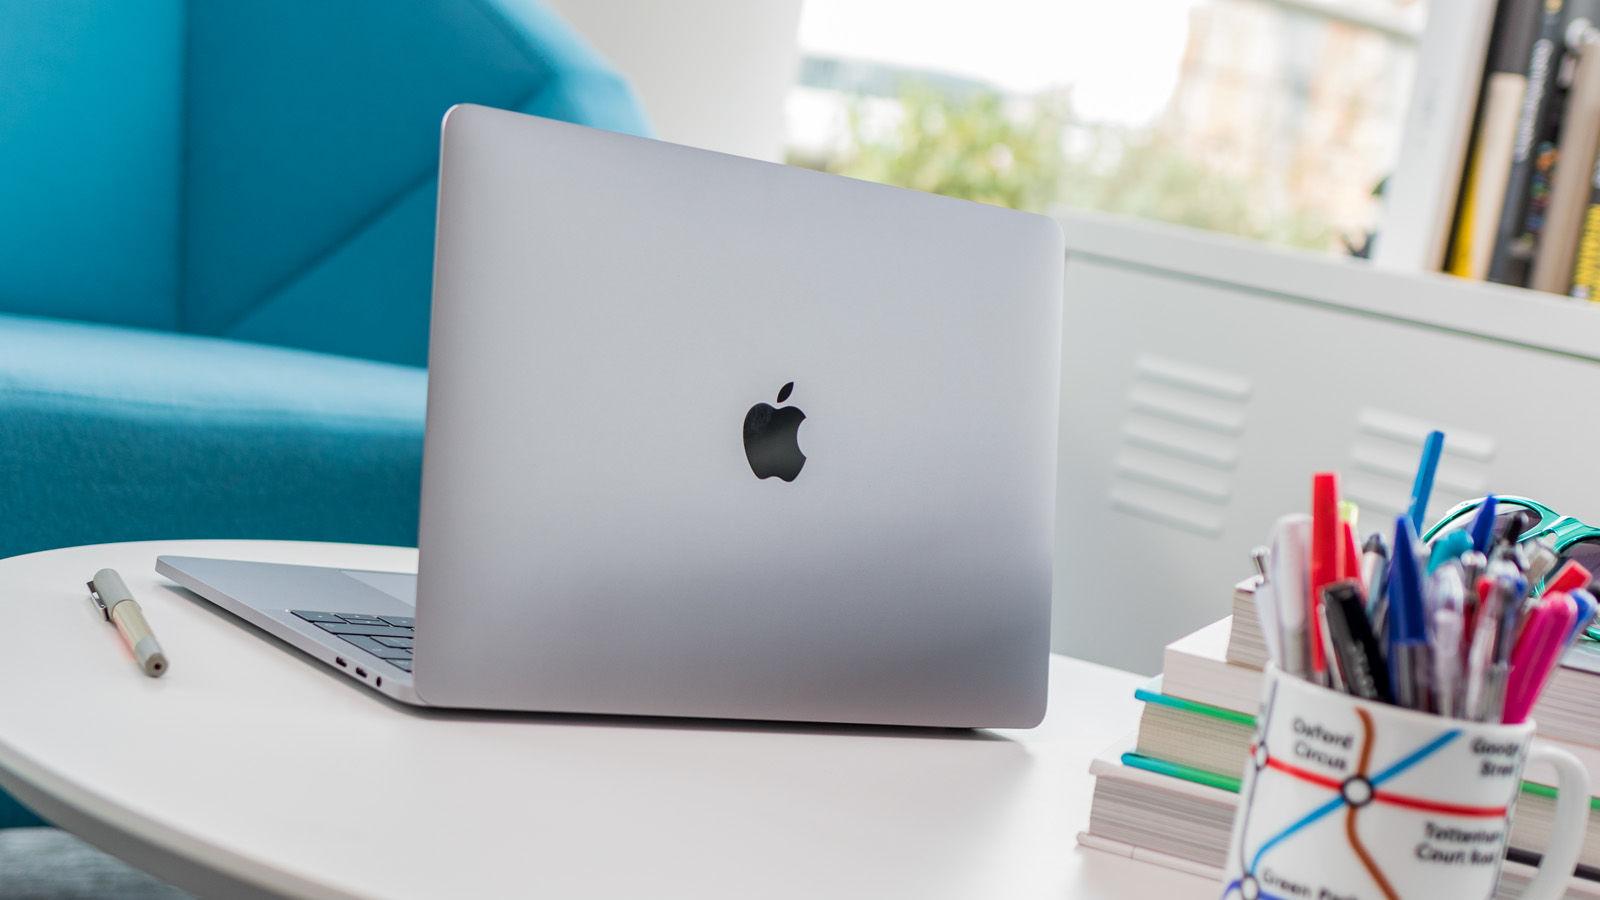 نقد و بررسی مک بوک پرو 2018 نسخه 13 اینچ - Apple MacBook Pro 2018